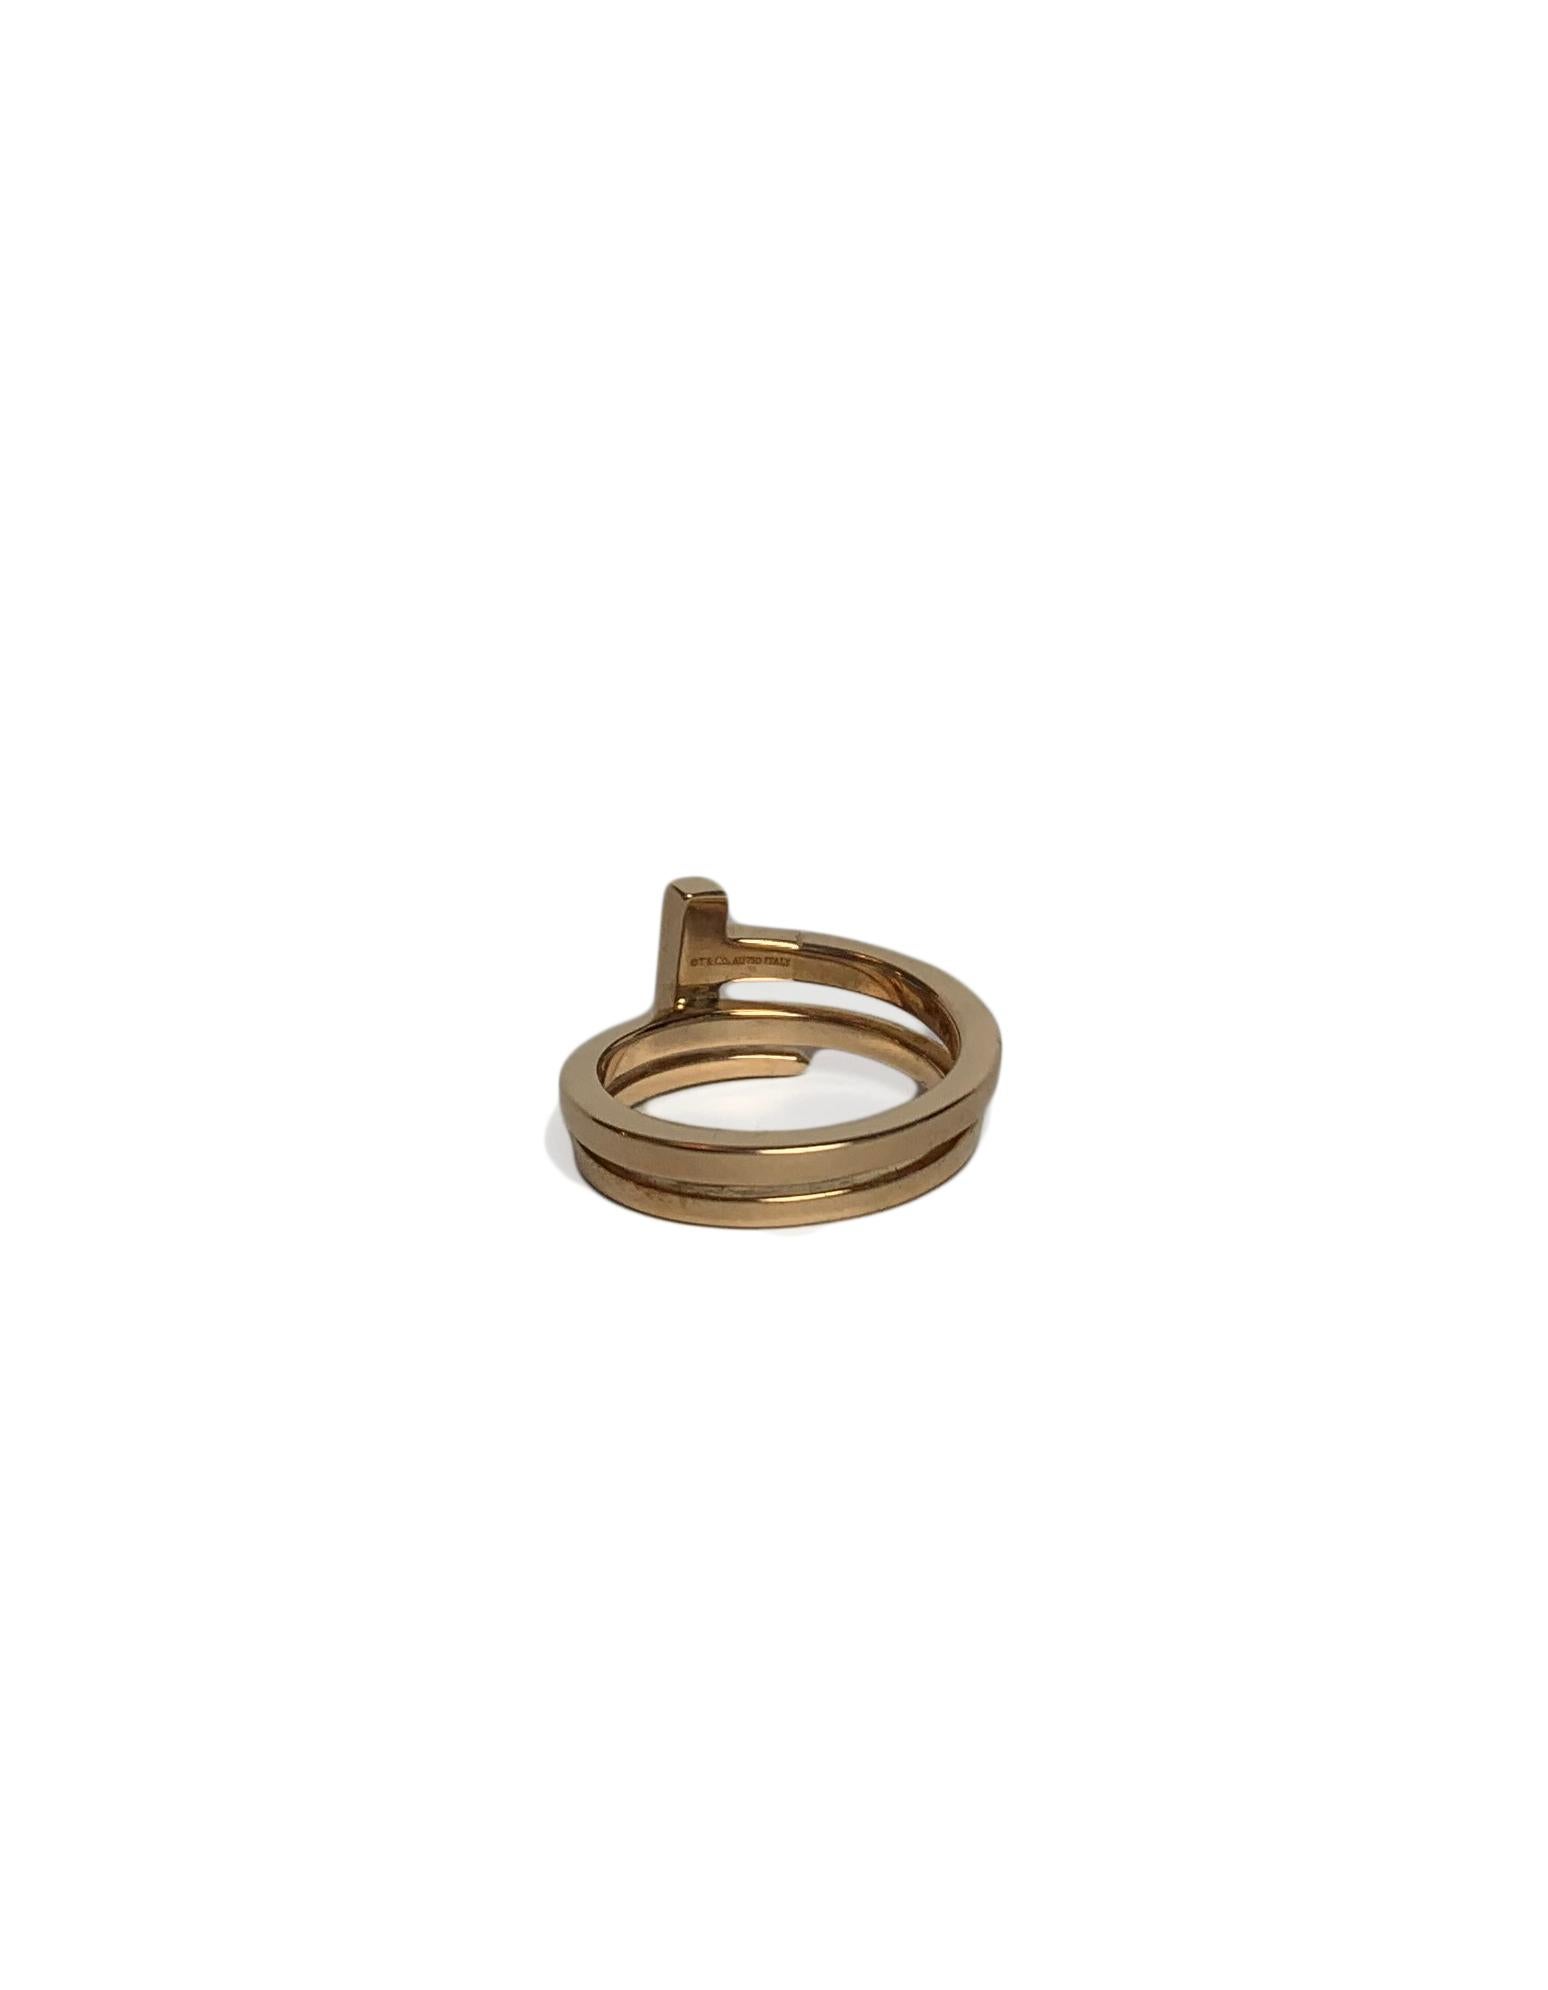 Brilliant Cut Tiffany & Co 18k Rose Gold T Square Diamond Wrap Ring sz 7.5 rt. $2, 500